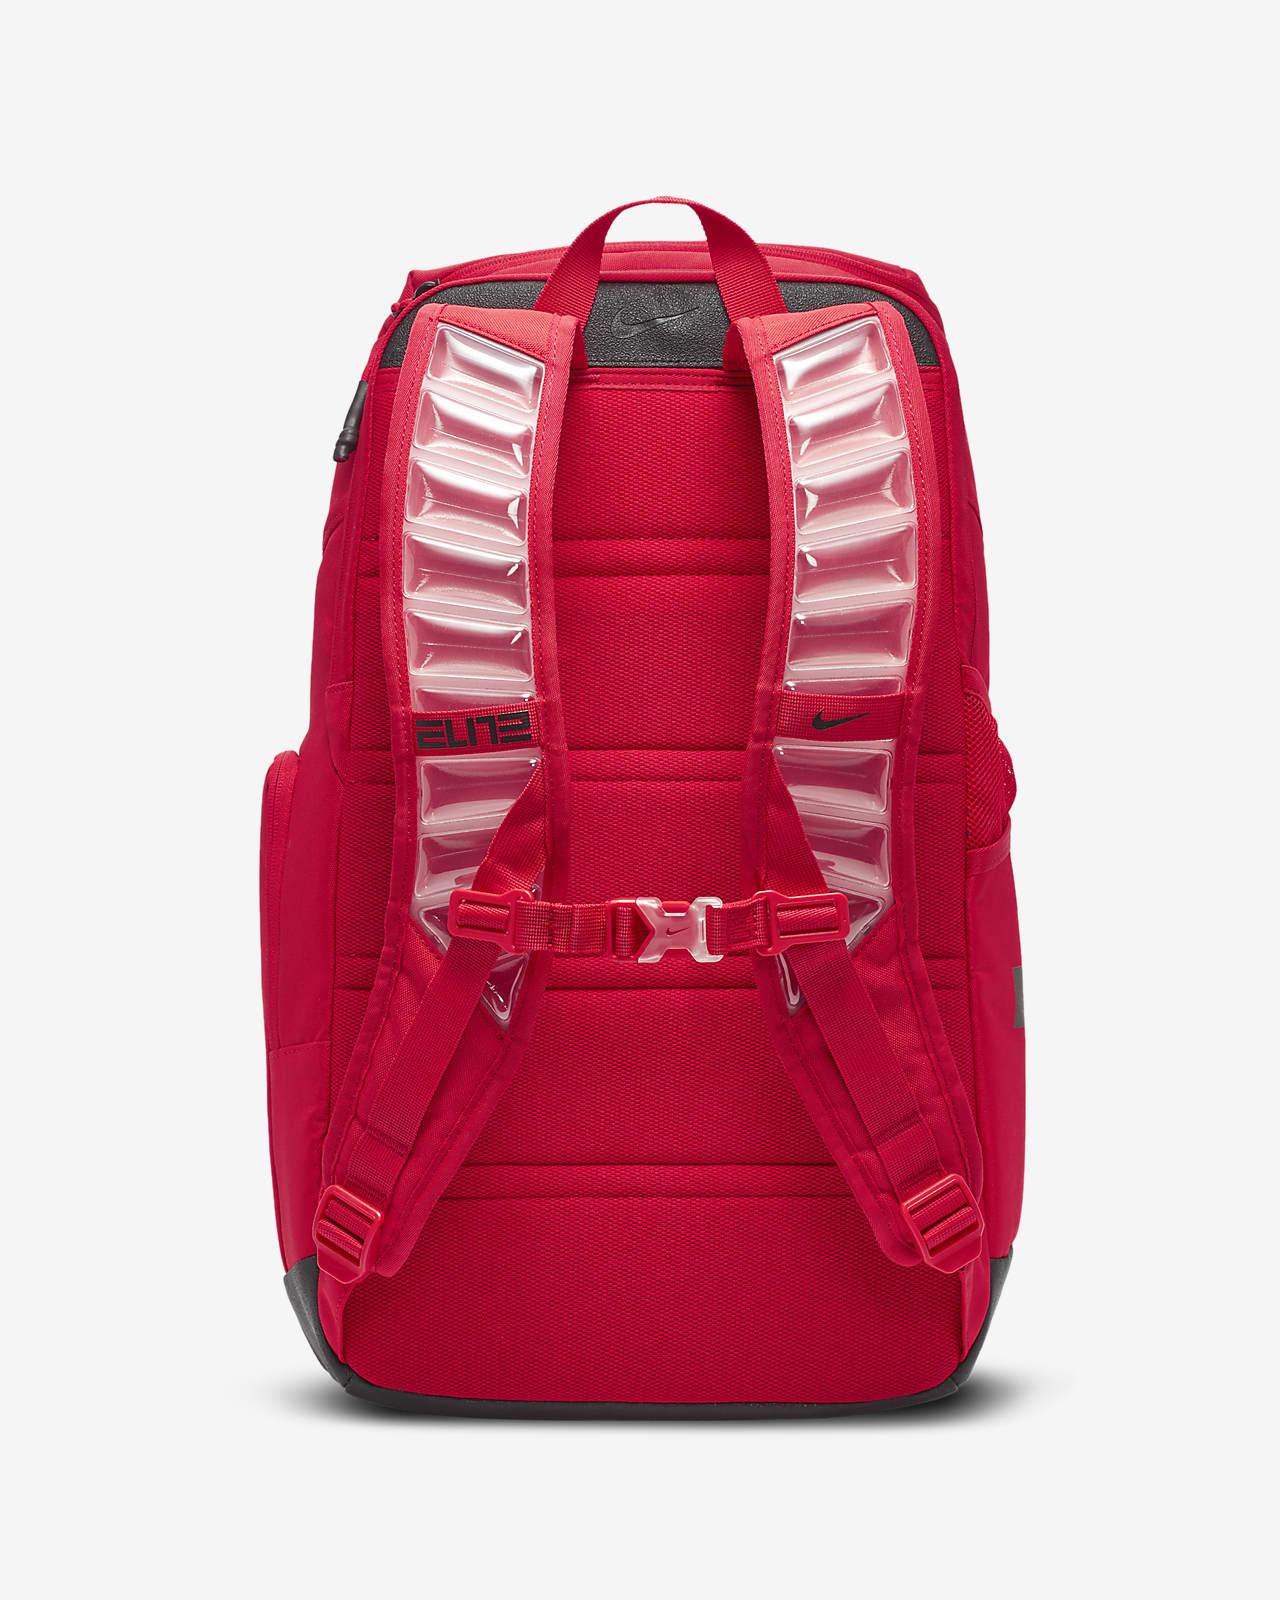 nike elite backpack cheap